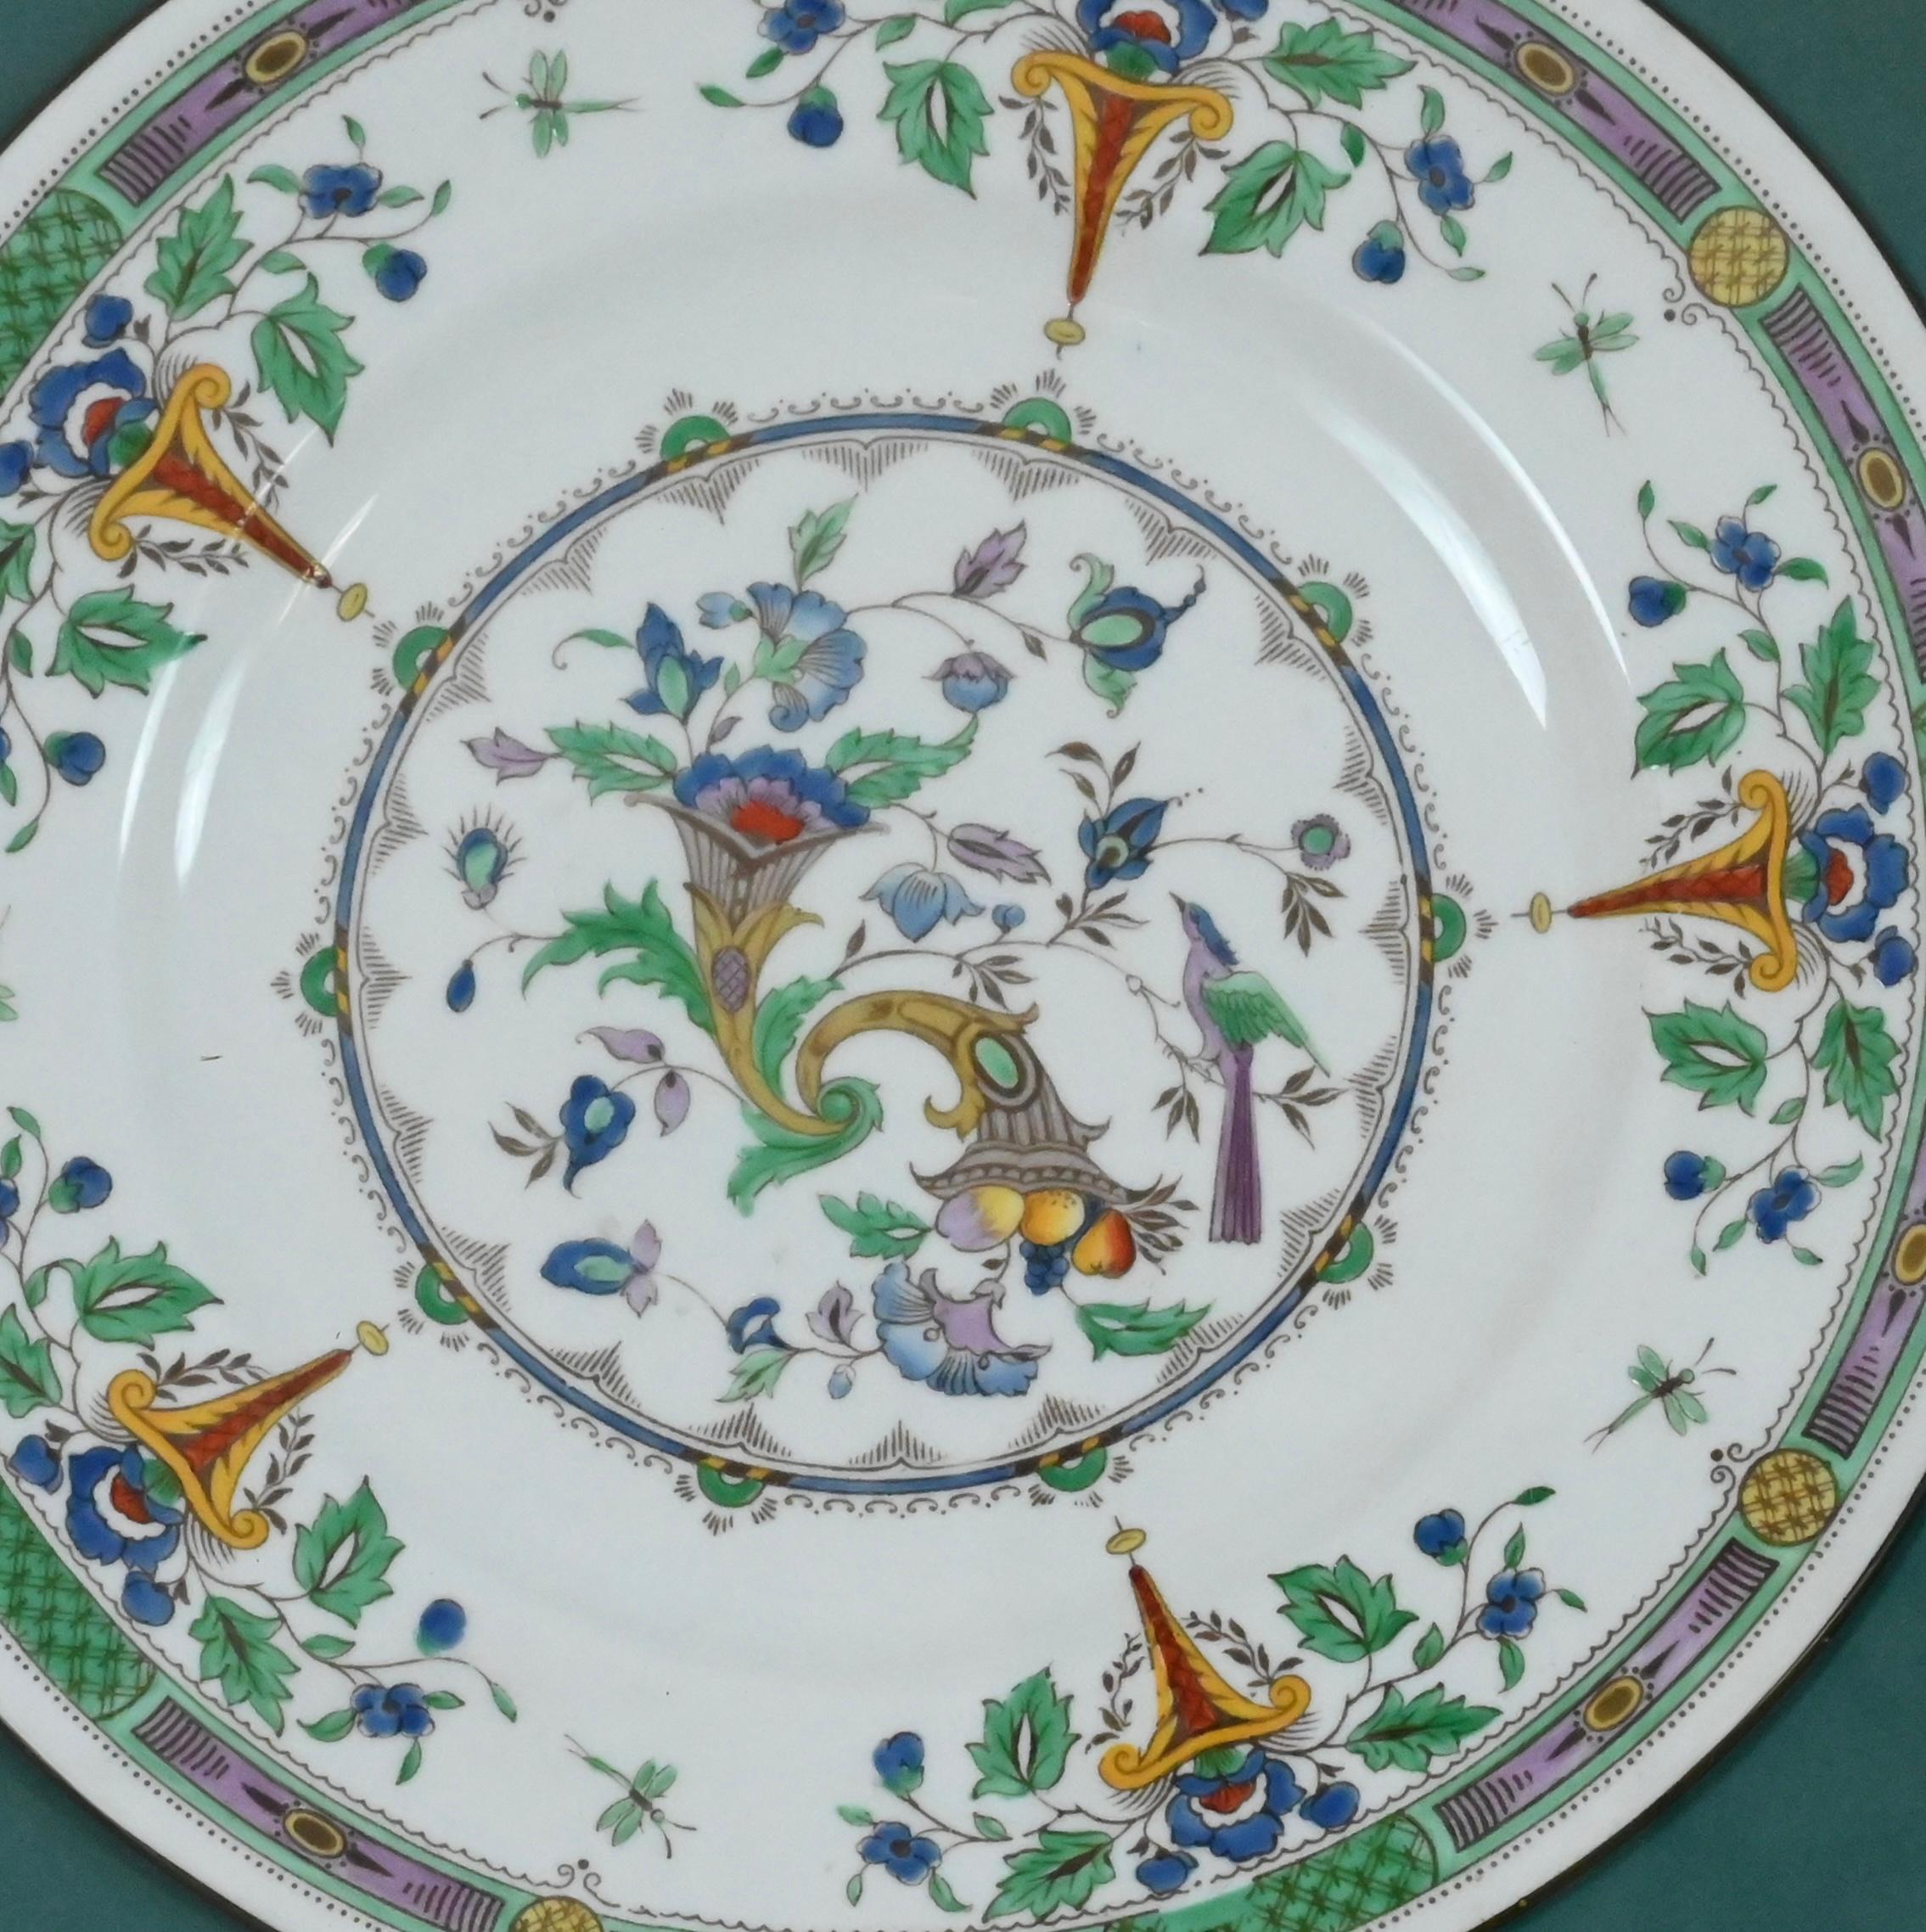 Un plat, un chargeur ou une assiette en porcelaine colorée et élégante de Wedgwood.  Les assiettes sont fabriquées et peintes à la main selon la technique de peinture originale de la Renaissance, inchangée au fil du temps, que l'on peut voir sur